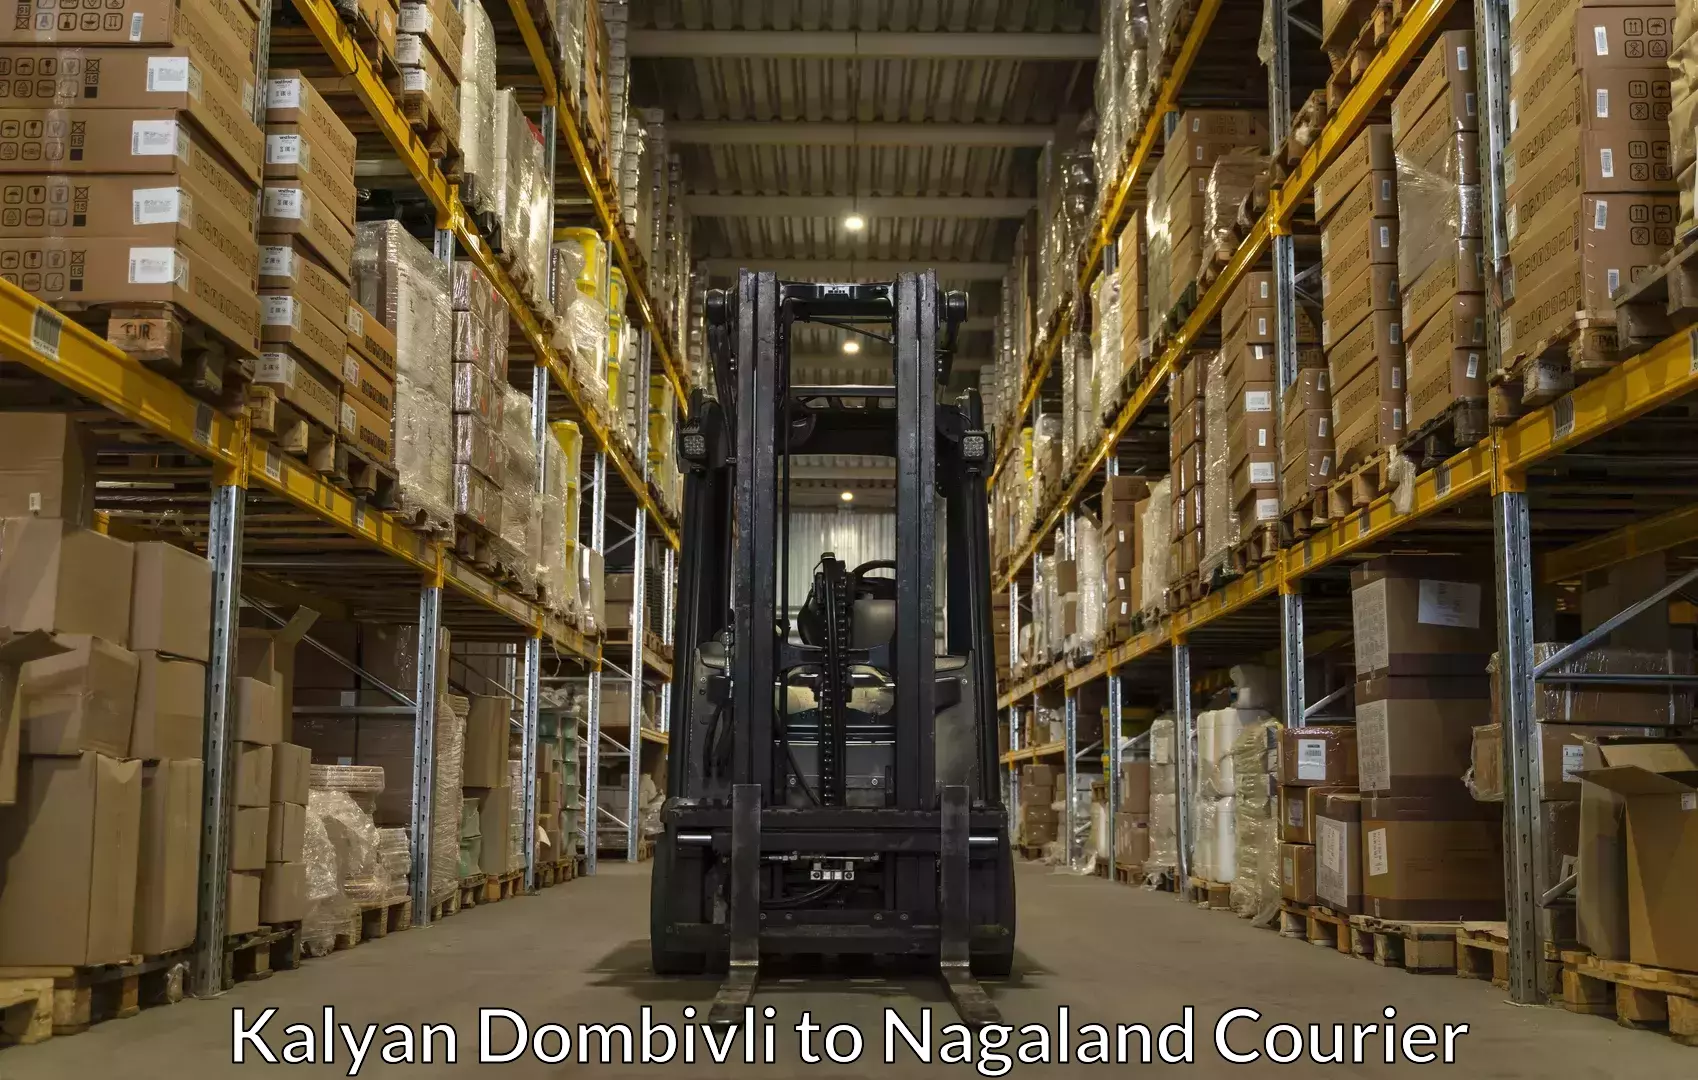 Luggage transport company Kalyan Dombivli to Longleng